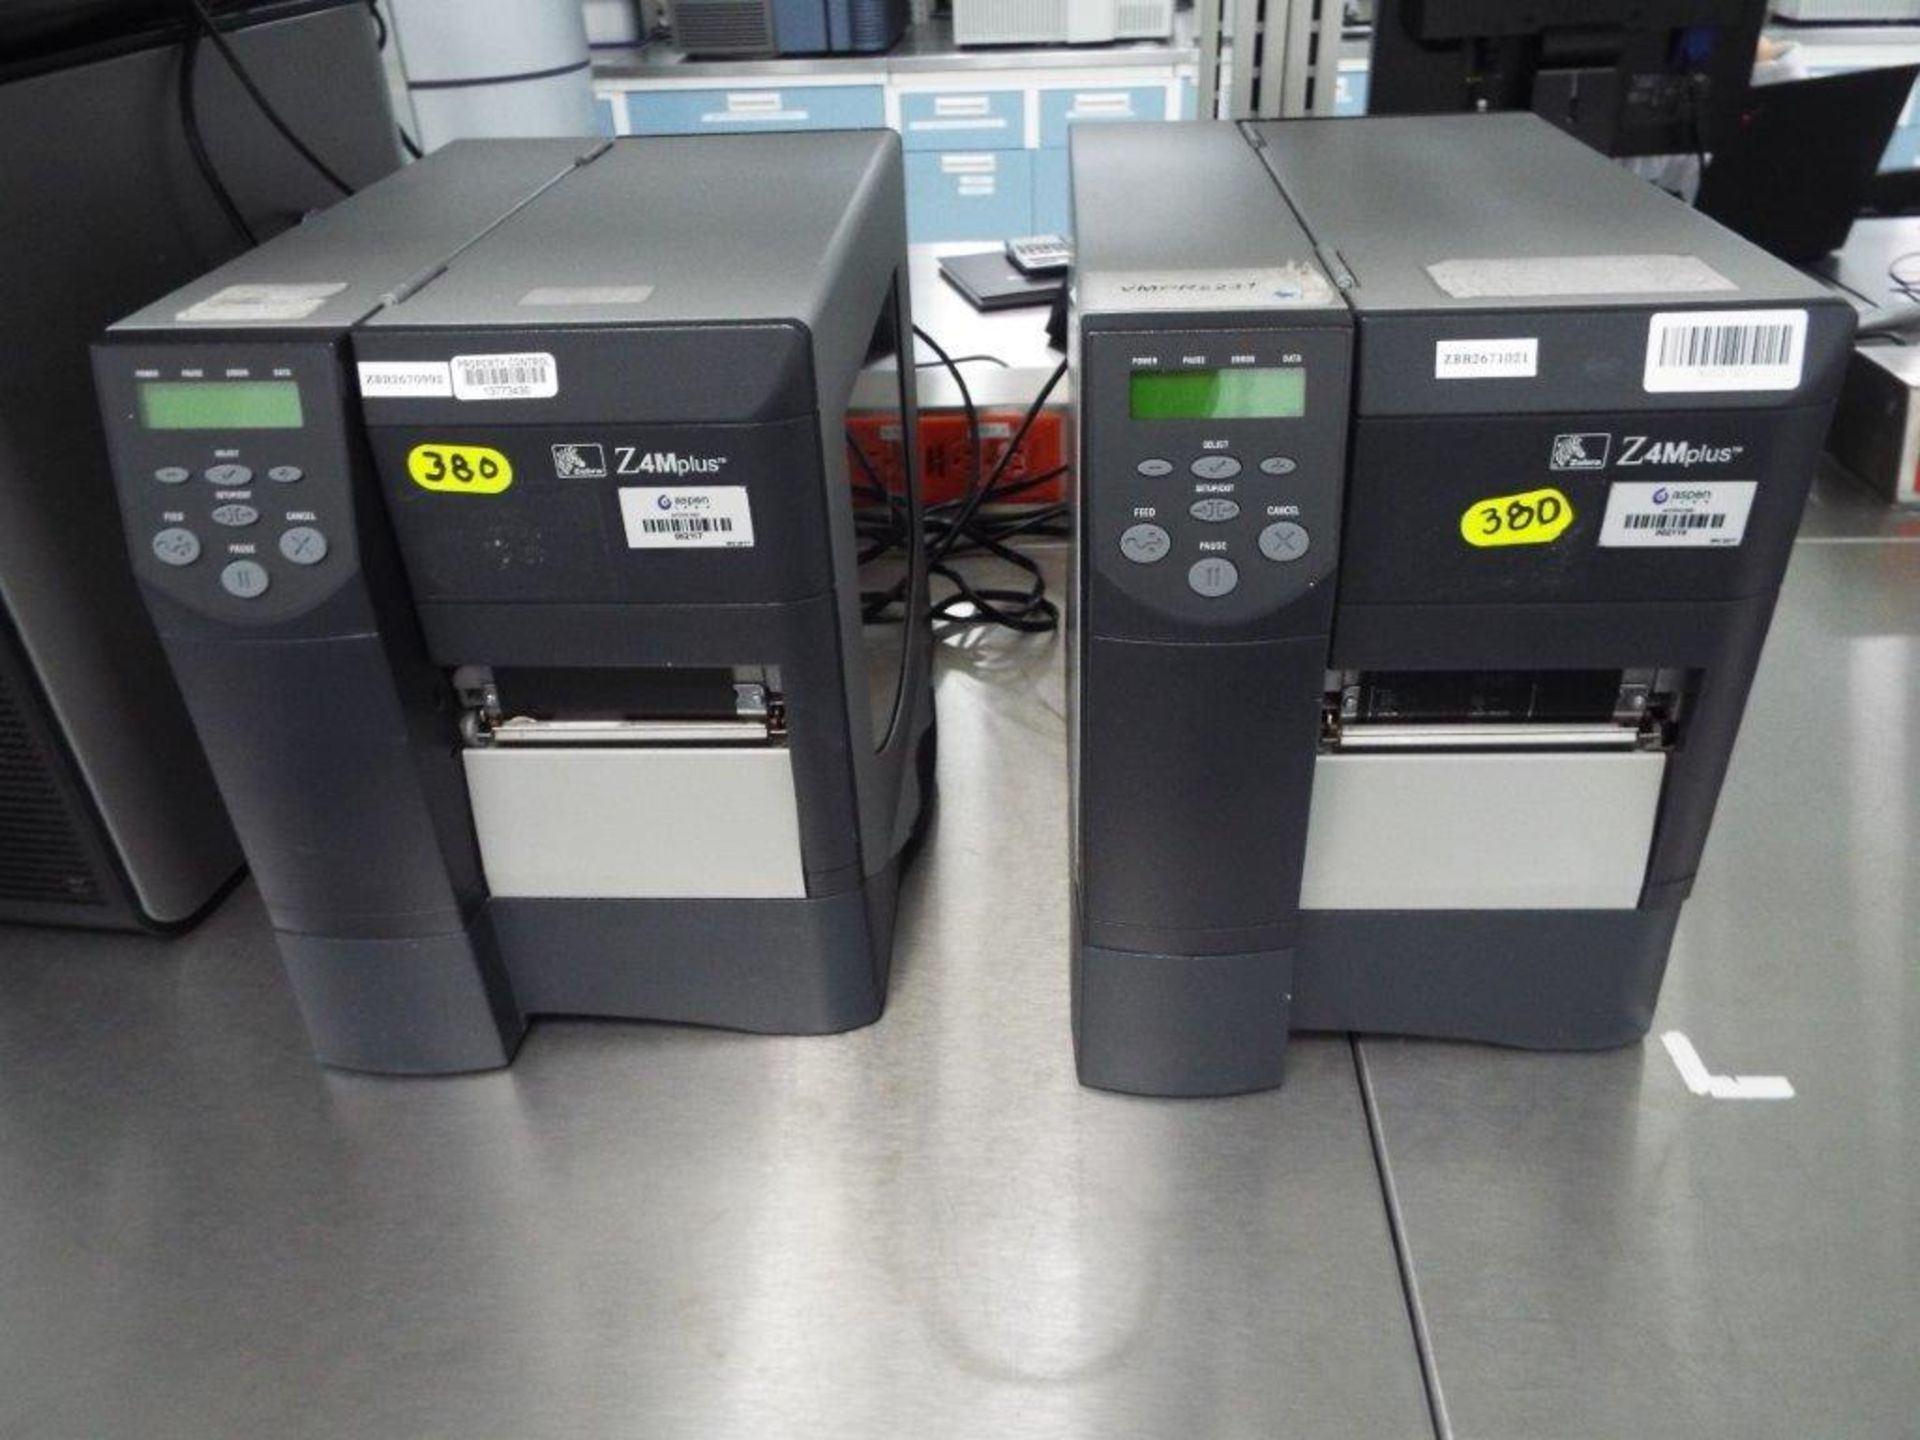 Zebra Z4M thermal printer